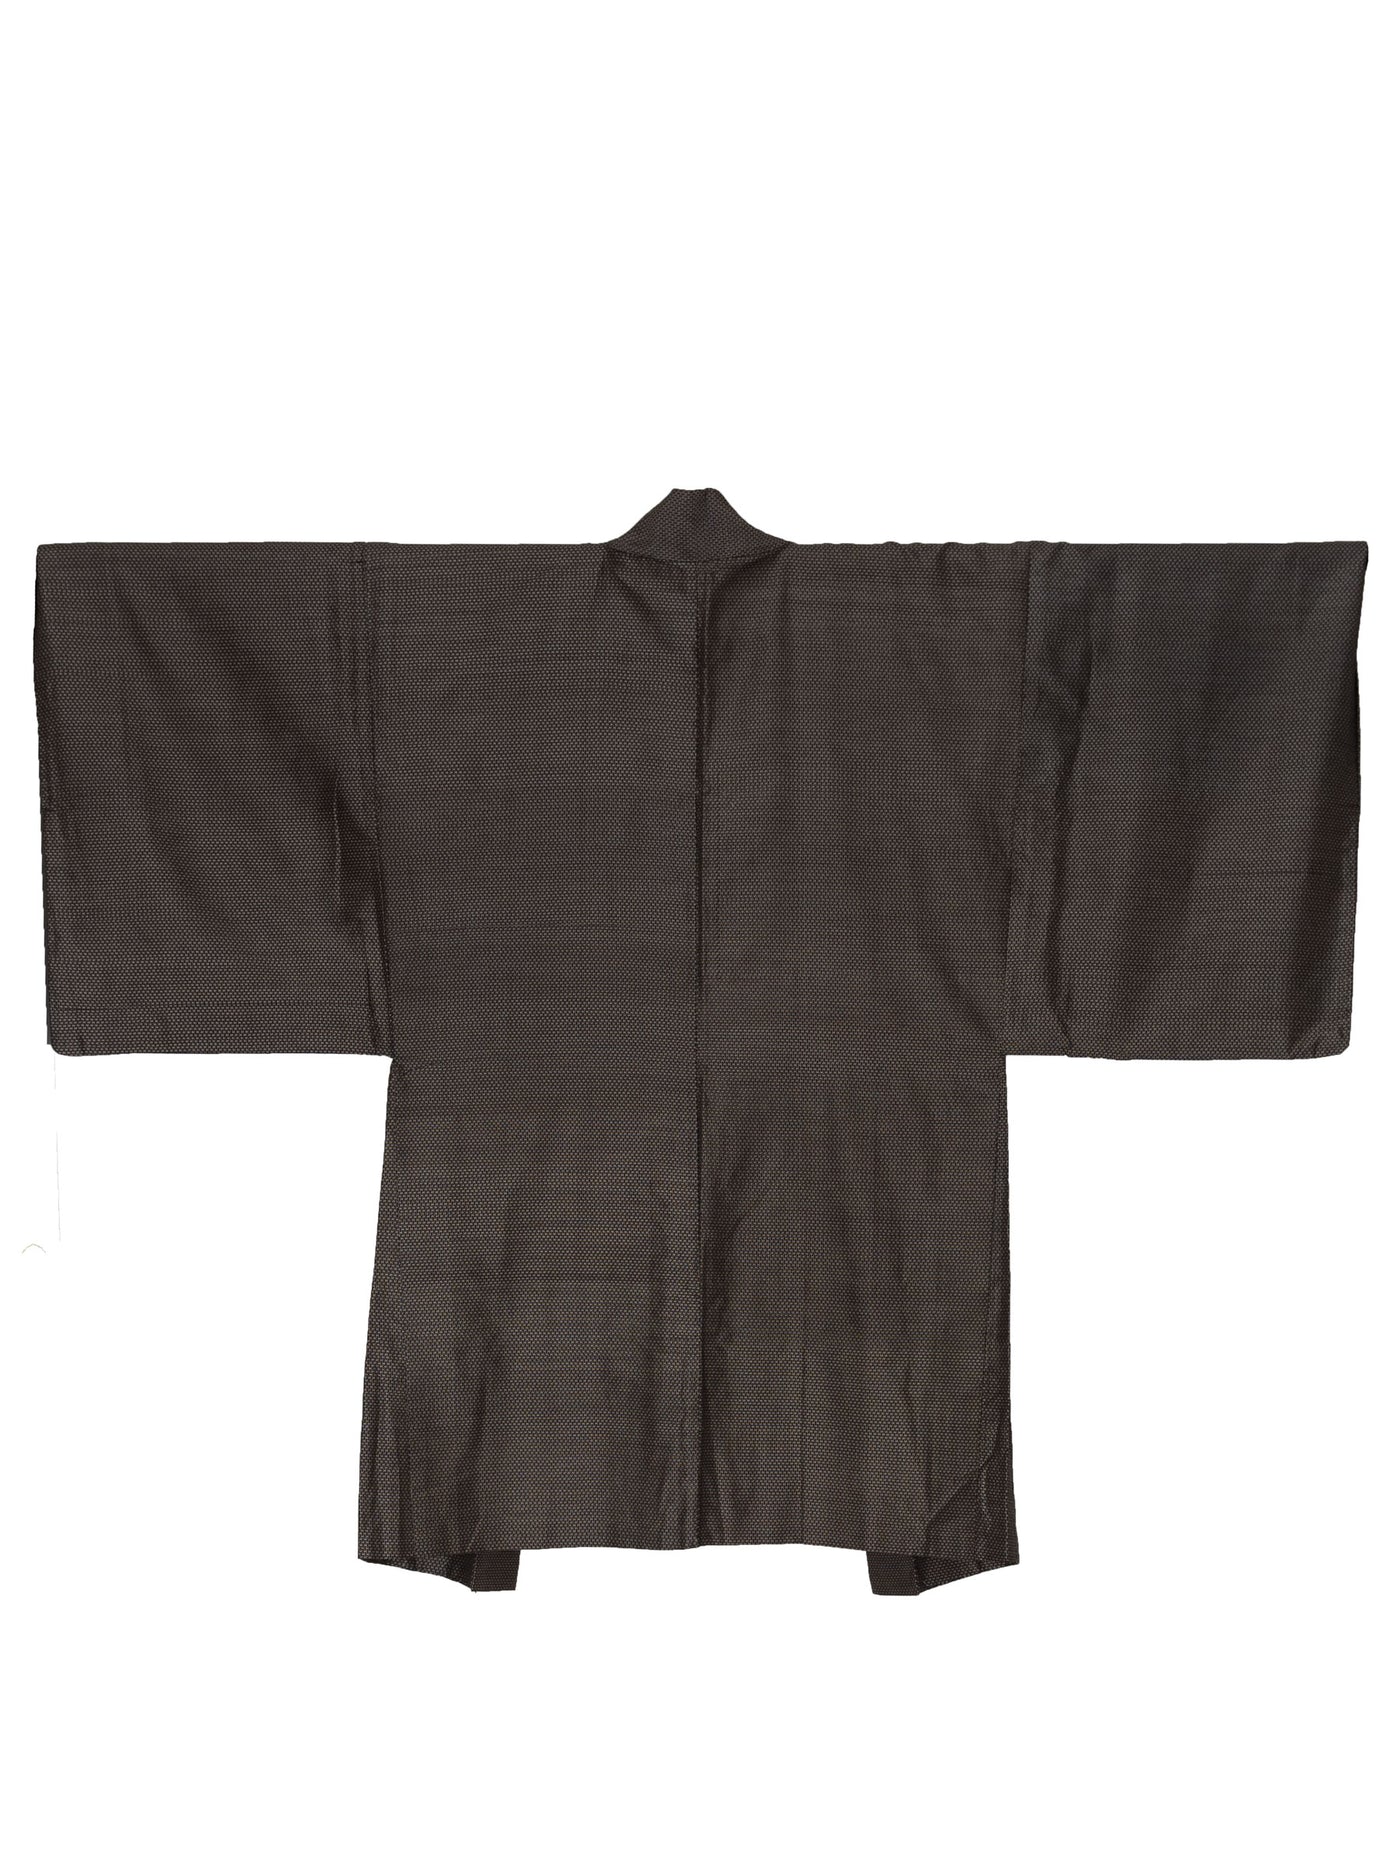 Vintage Hanabira Men's Haori Jacket